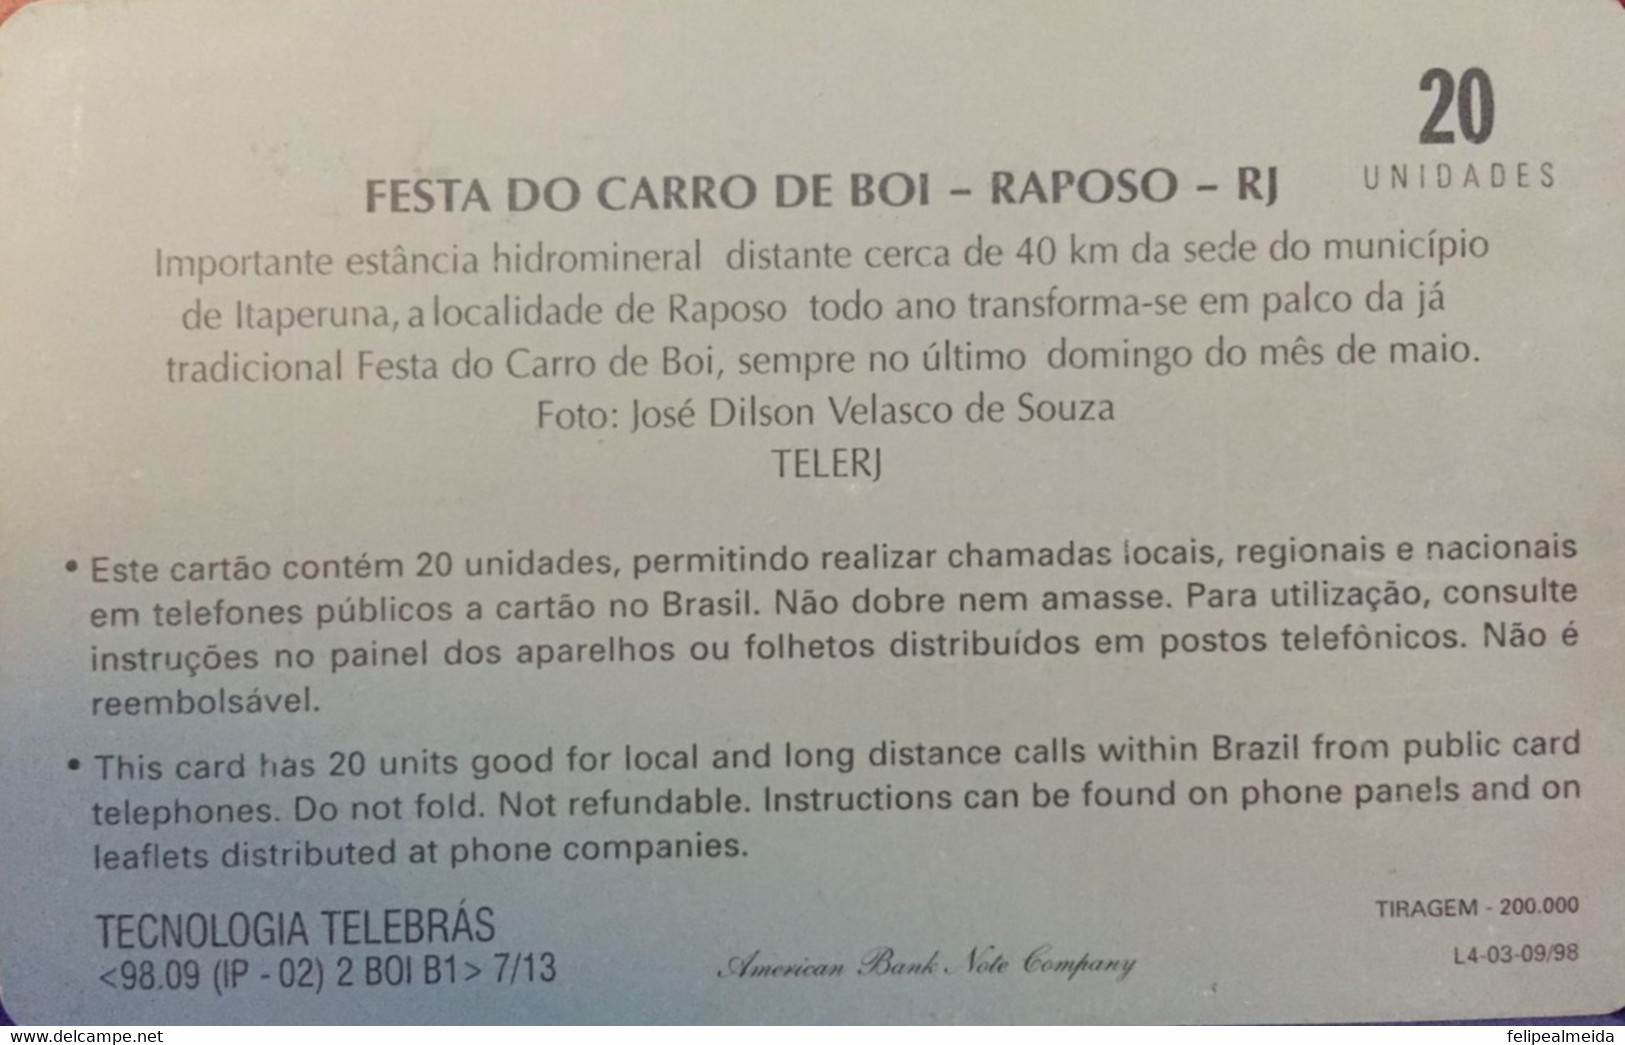 Phone Card Manufactured By Telerj In 1998 - Series Norte Fluminense - Festa Do Carro De Boi In Raposo - Rio De Janei - Cultural